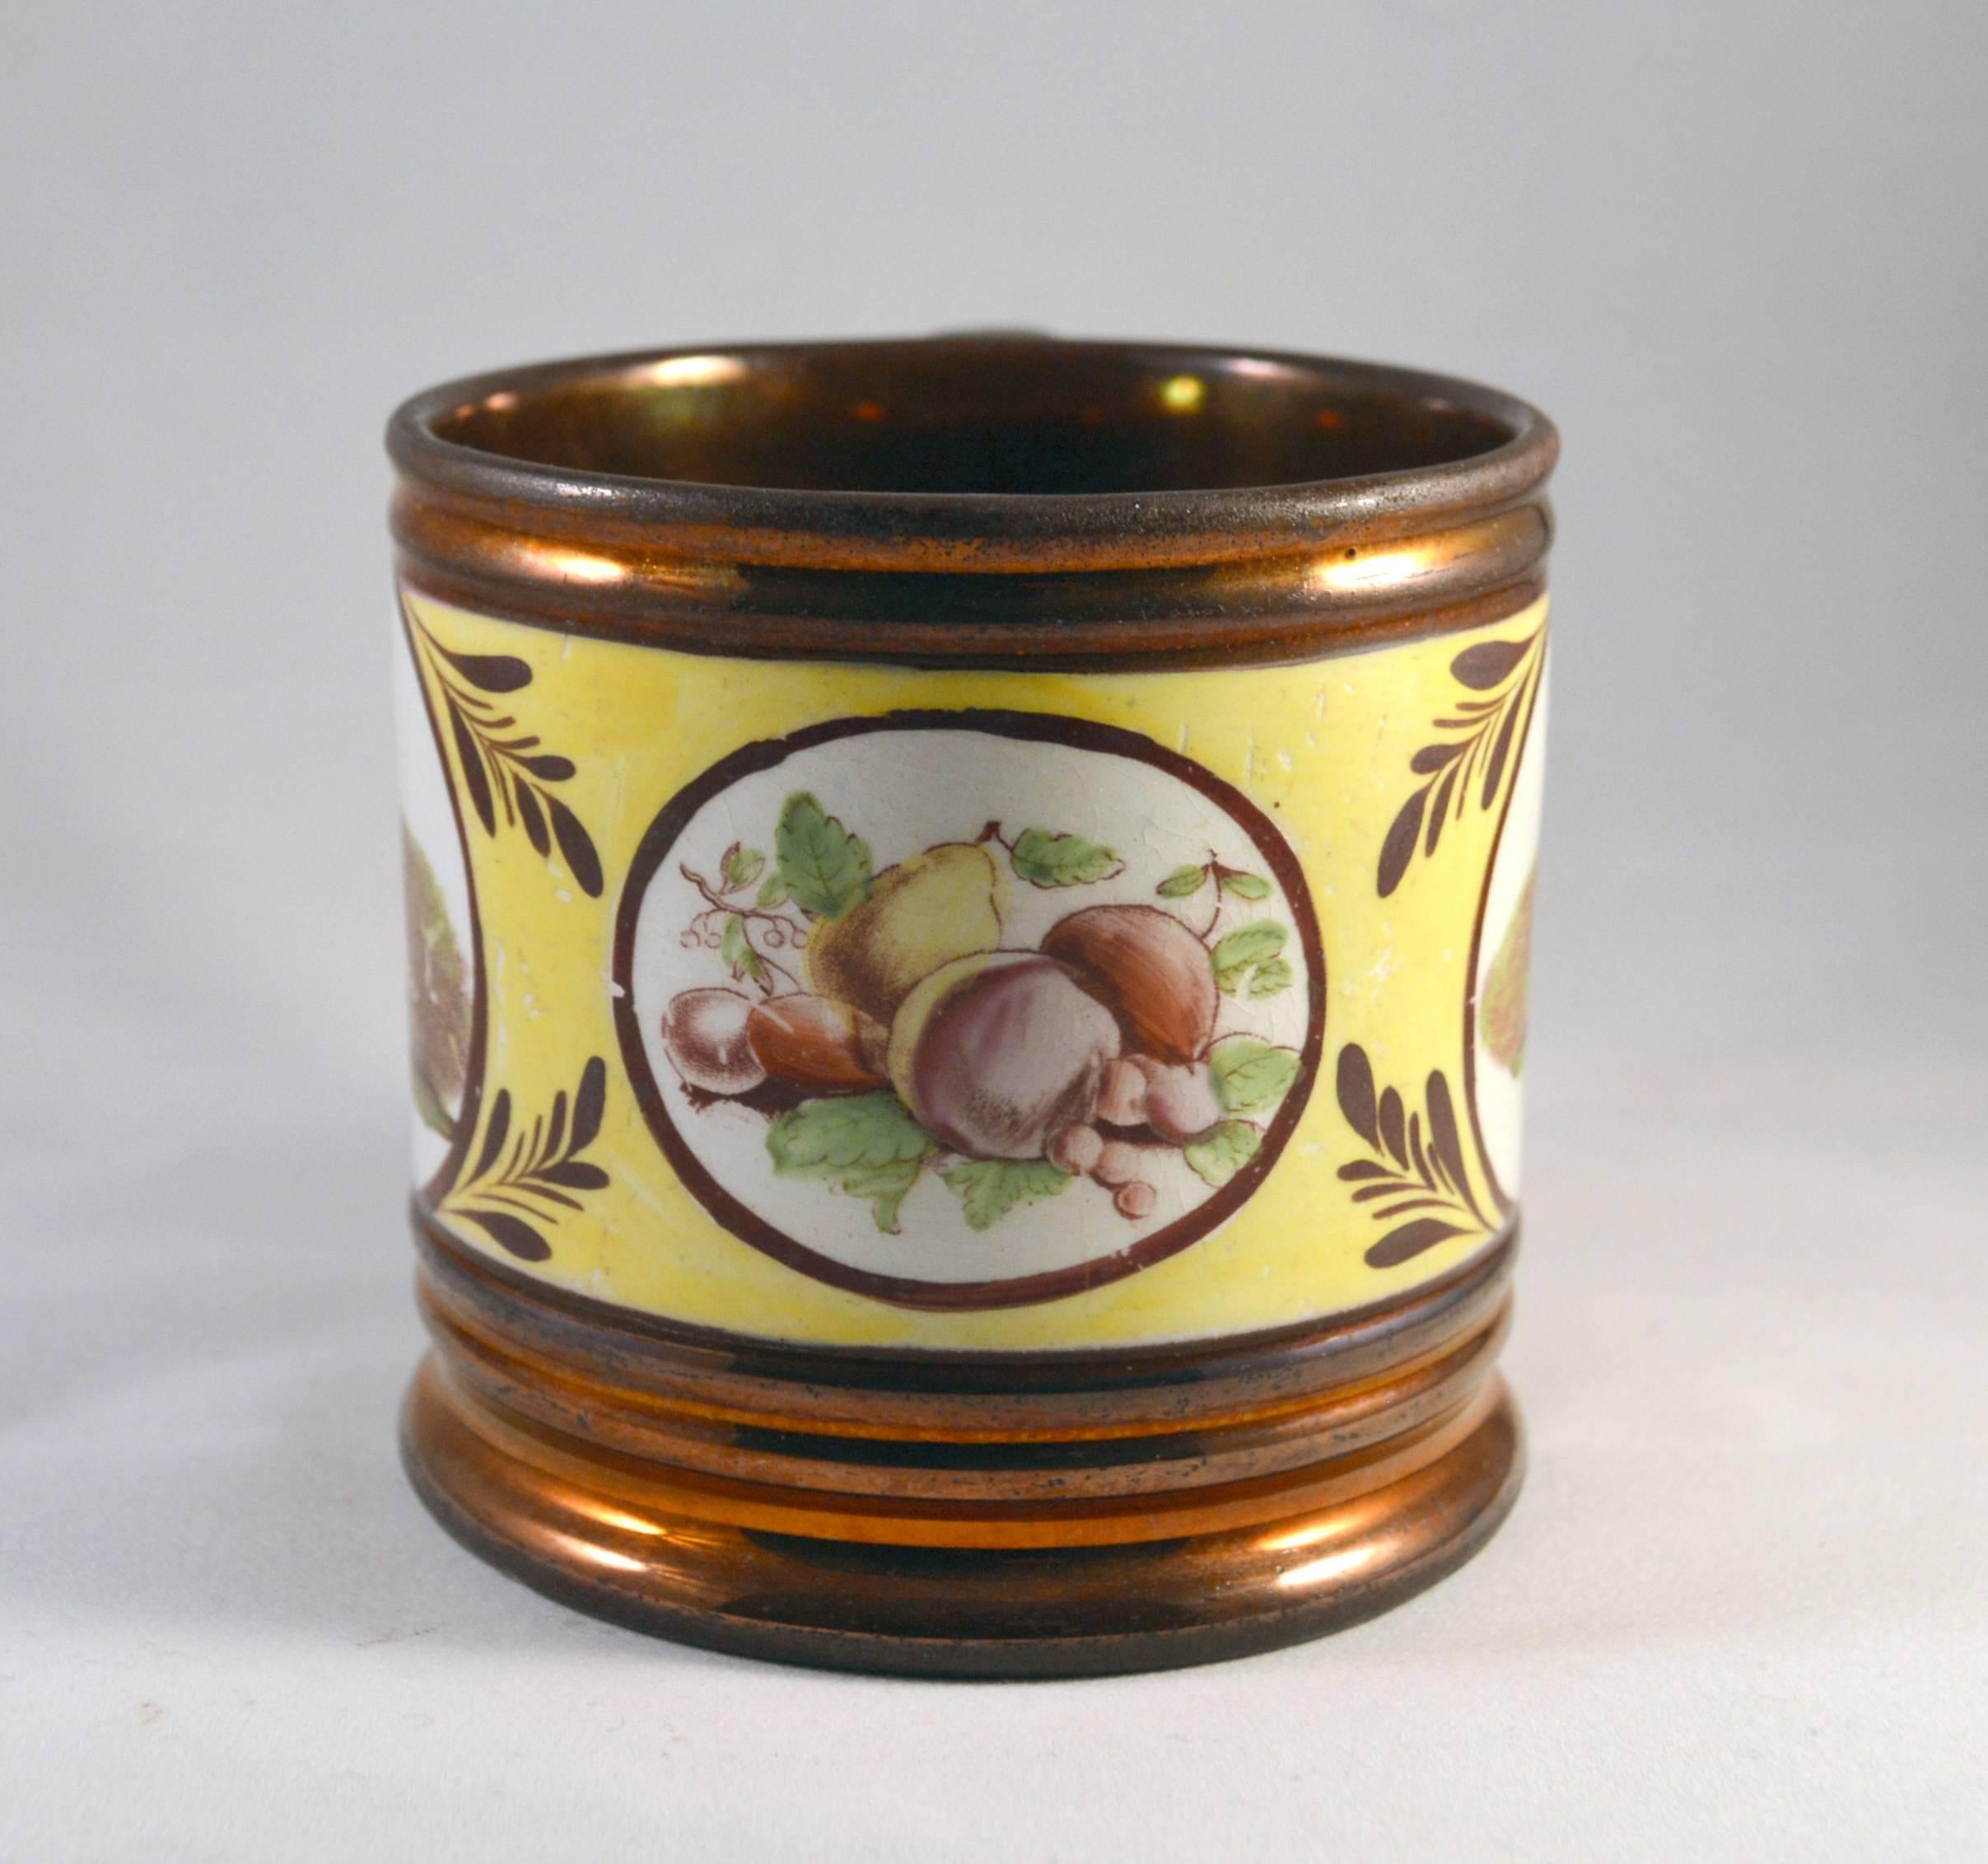 copper lustre ceramics